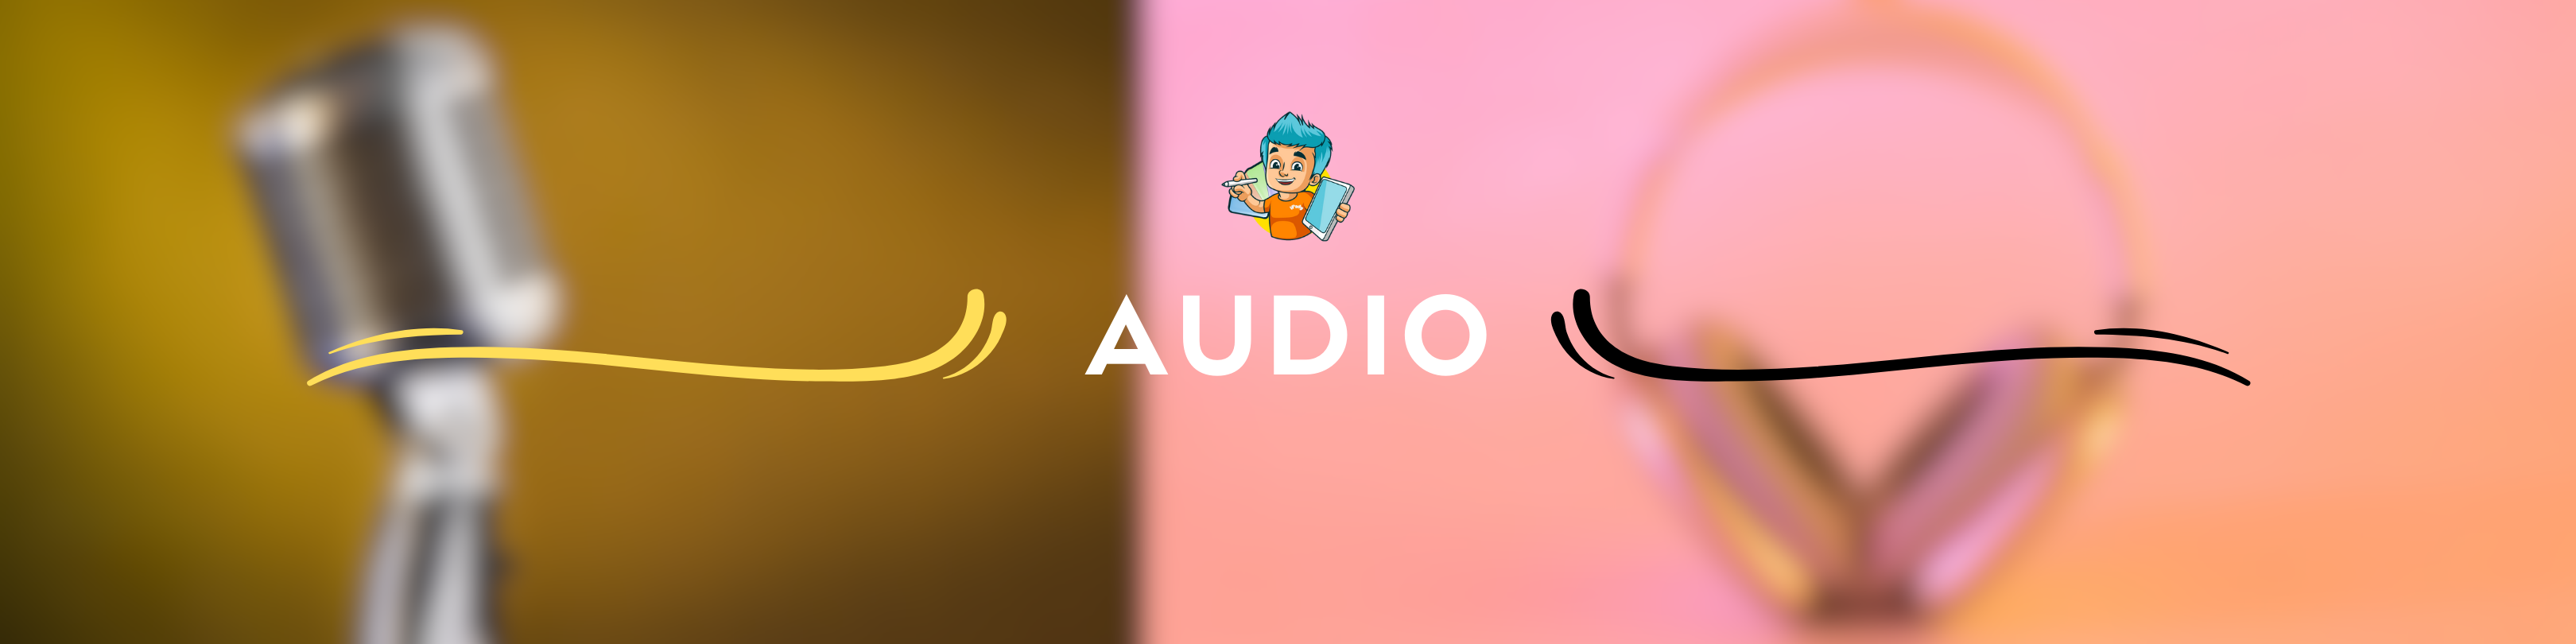 Audio - Headphones - Earbuds